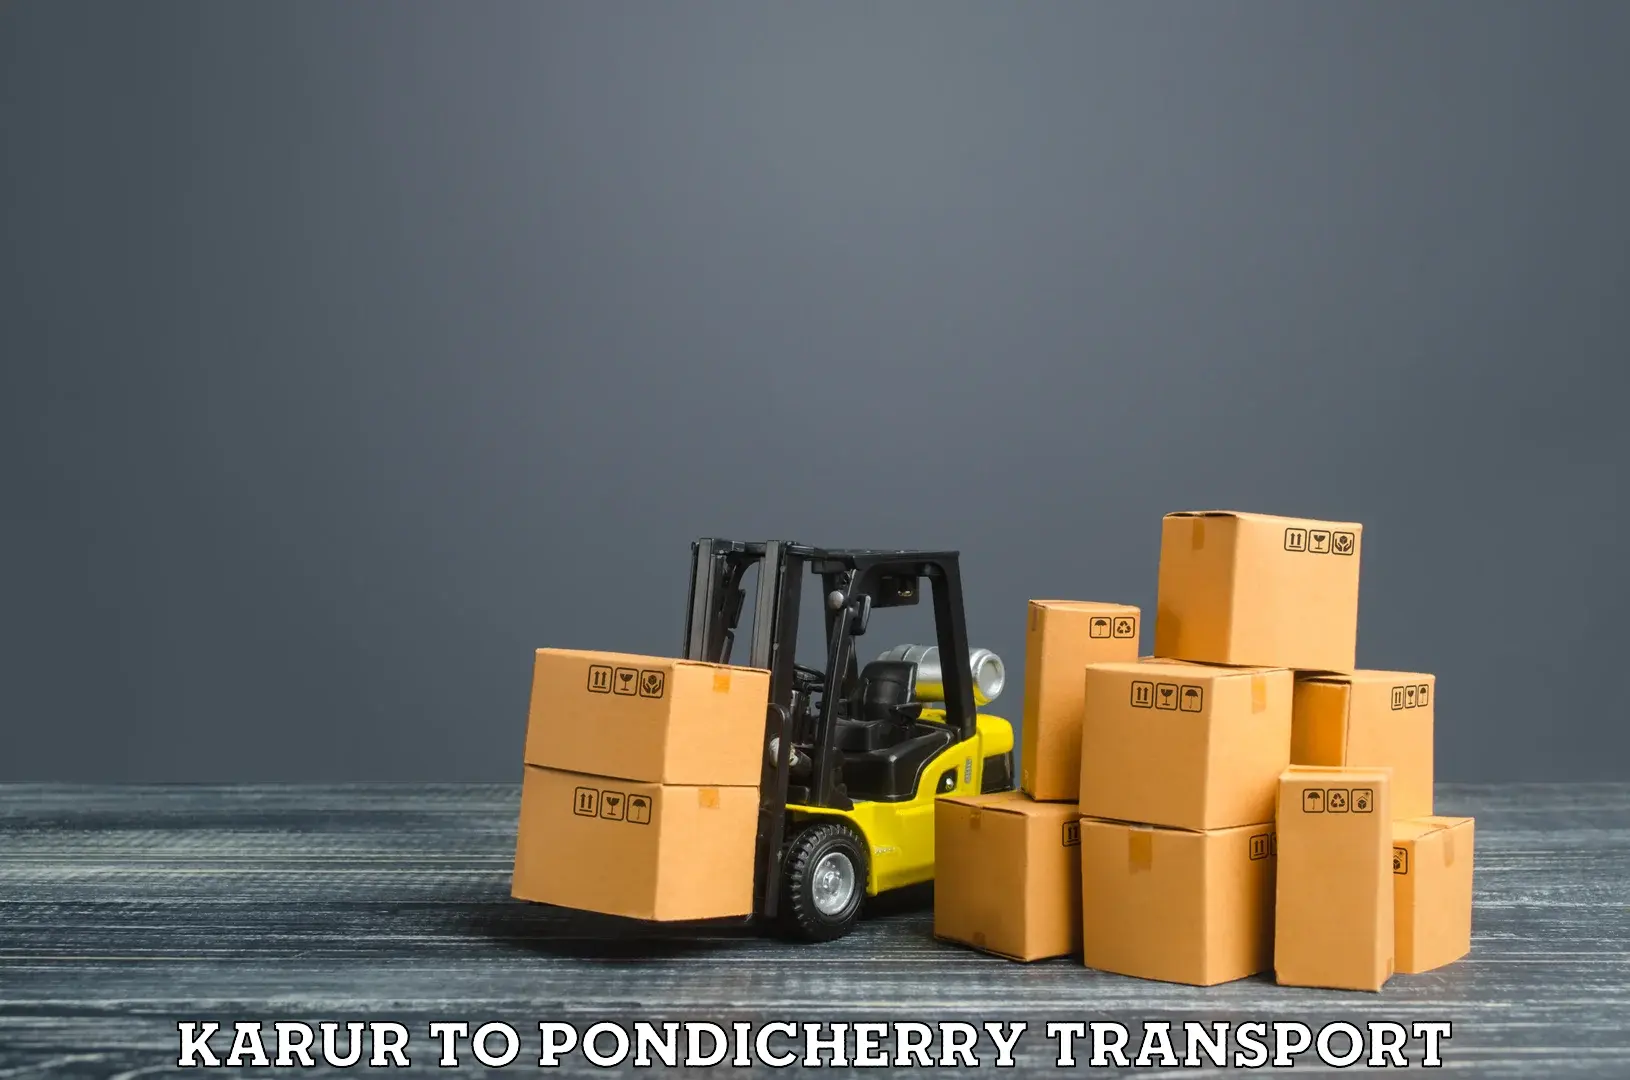 Nationwide transport services Karur to Pondicherry